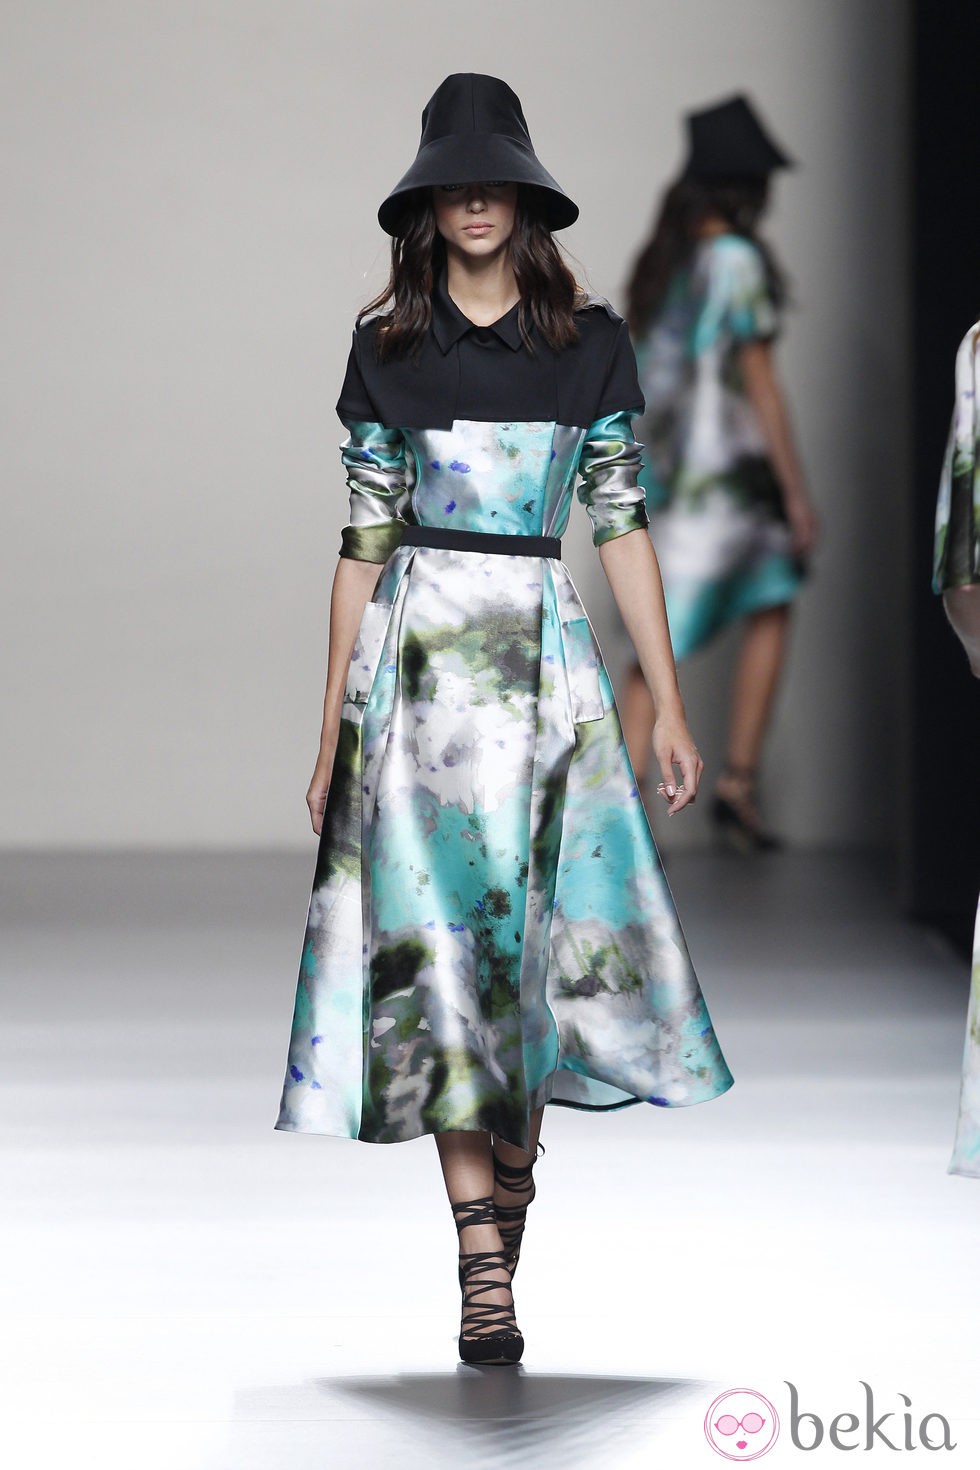 Vestido línea A de la colección primavera/verano 2014 de Juanjo Oliva en Madrid Fashion Week